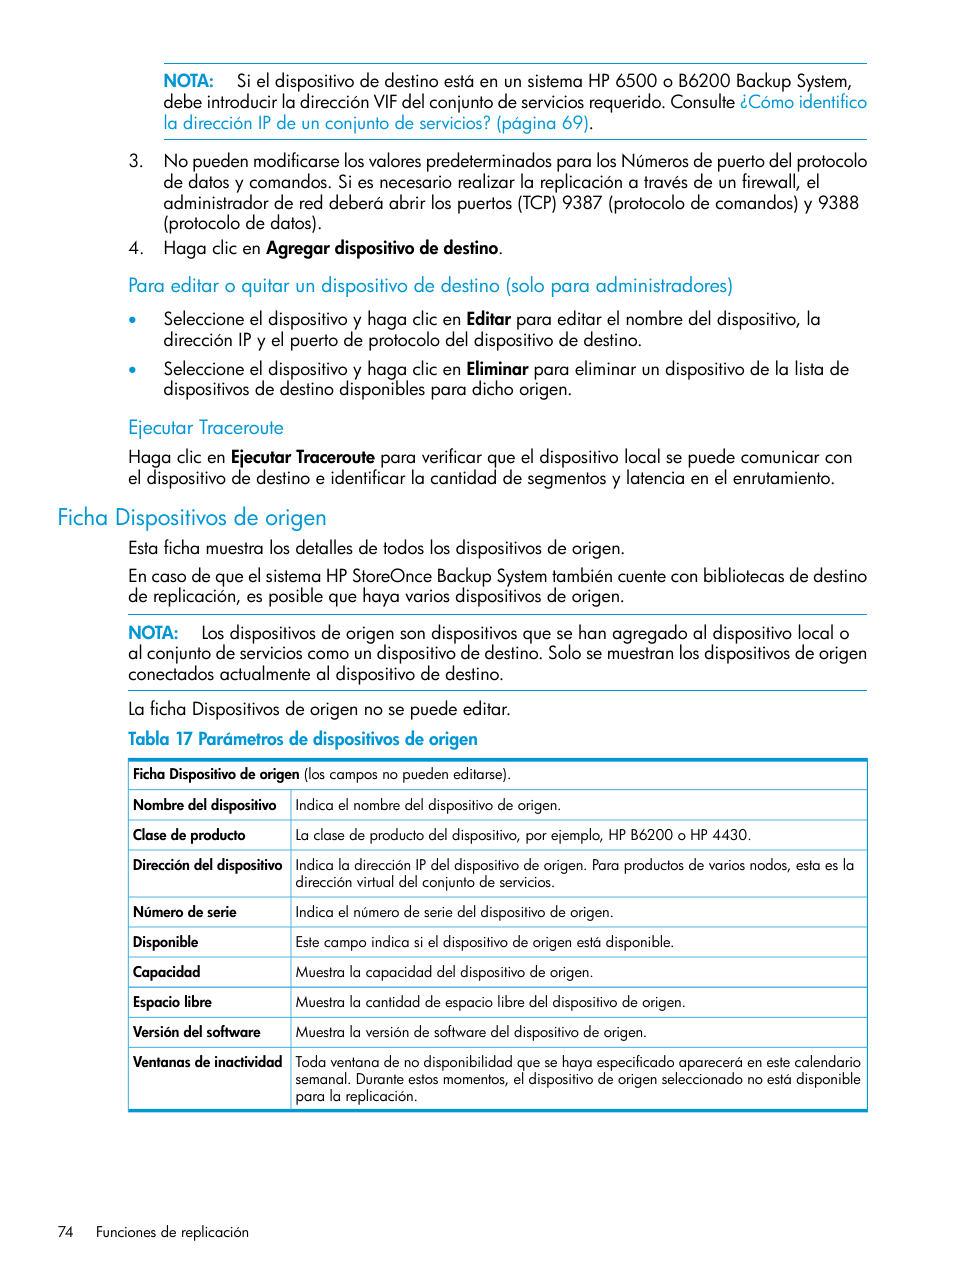 Ficha dispositivos de origen | HP Copia de seguridad HP StoreOnce Manual del usuario | Página 74 / 219